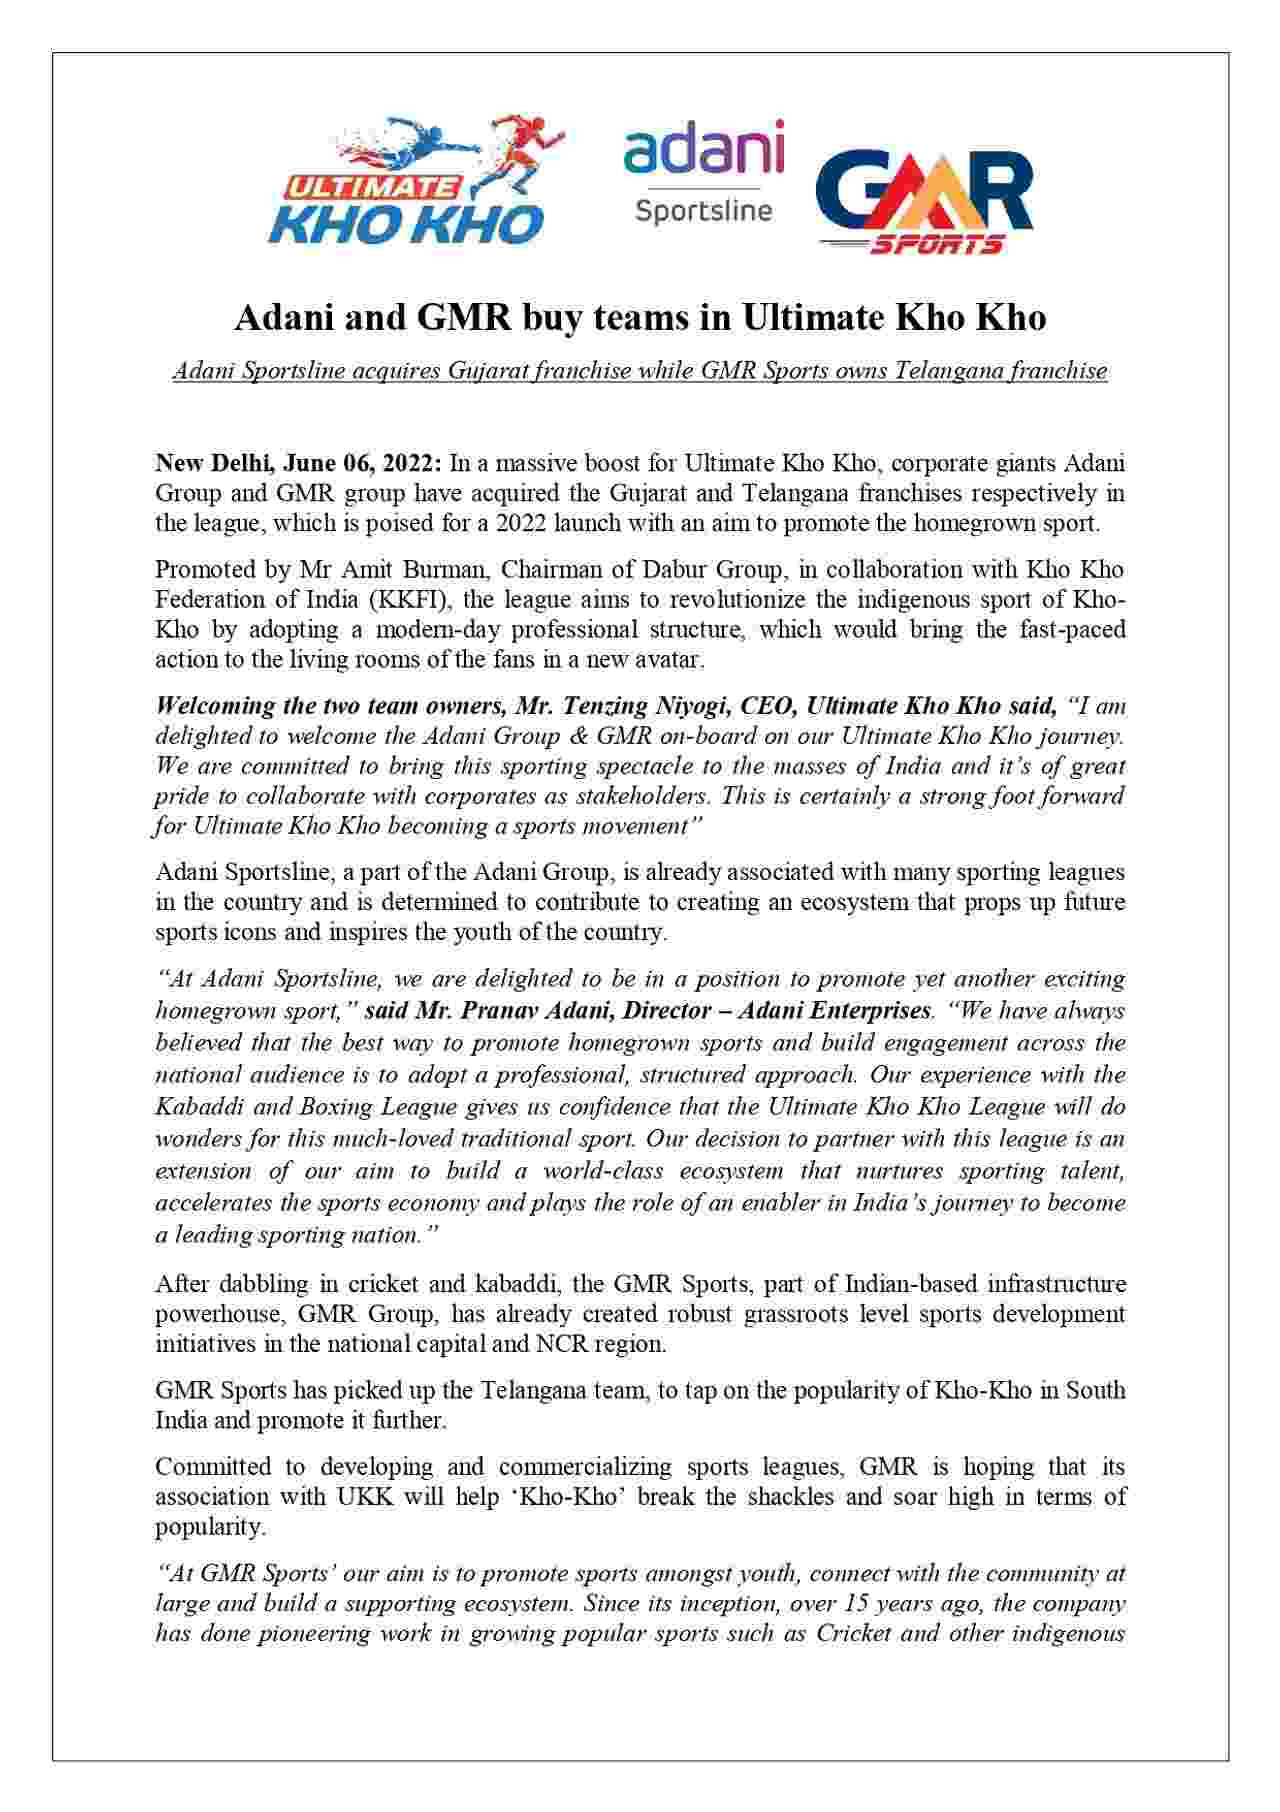 Ultimate Kho-Kho League